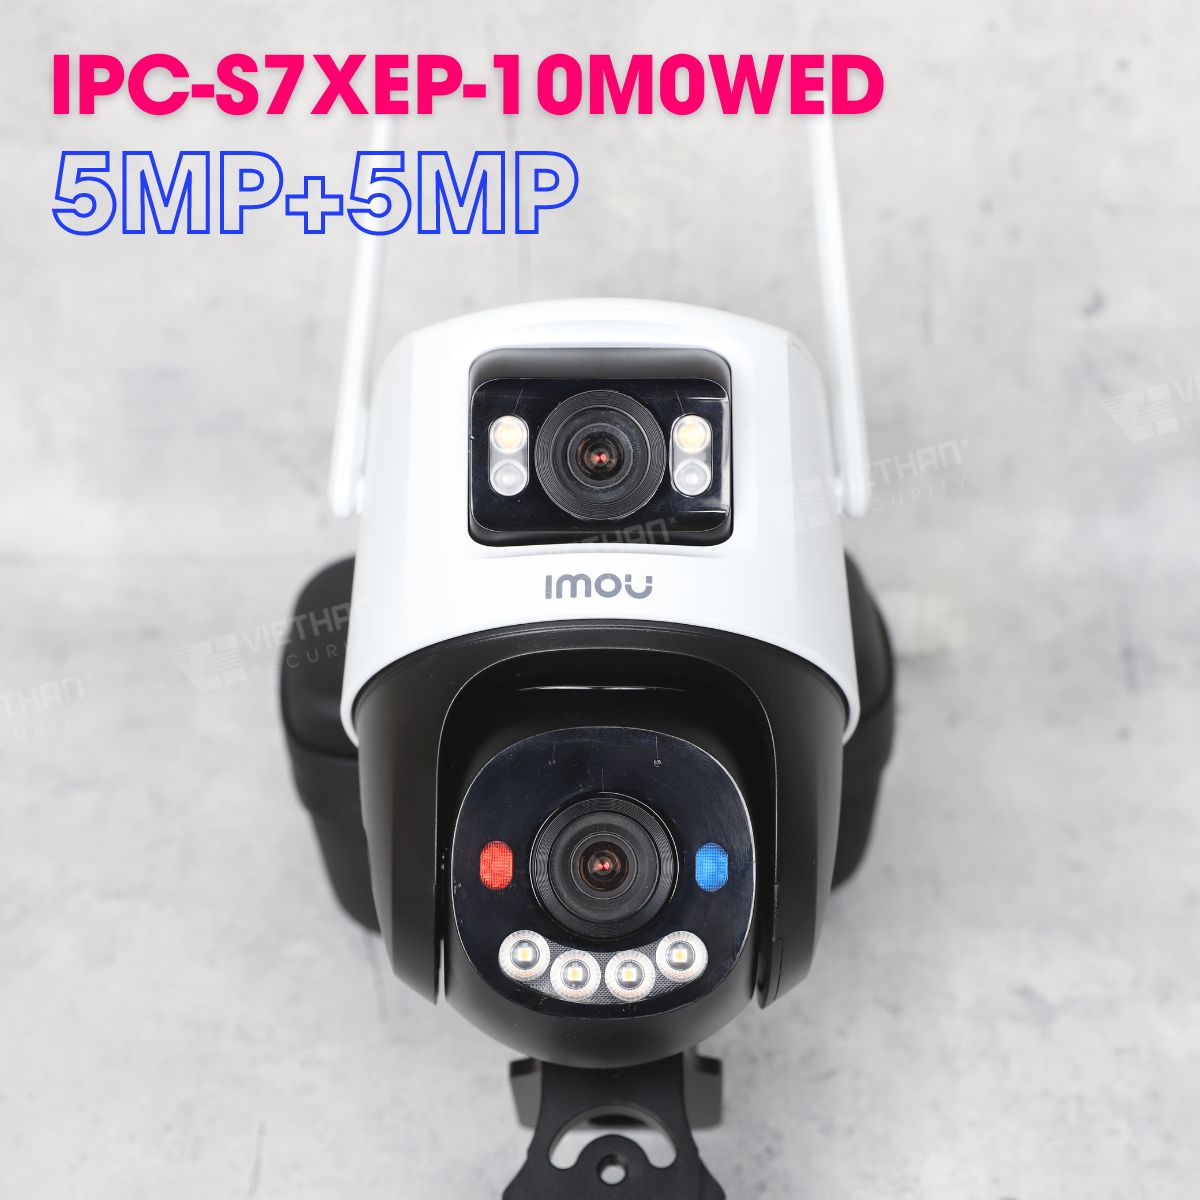 Camera Cruiser Dual 2 10MP IMOU IPC-S7XEP-10M0WED 5MP + 5MP hồng ngoại 30m, đèn còi báo xanh đỏ 110dB, đàm thoại 2 chiều